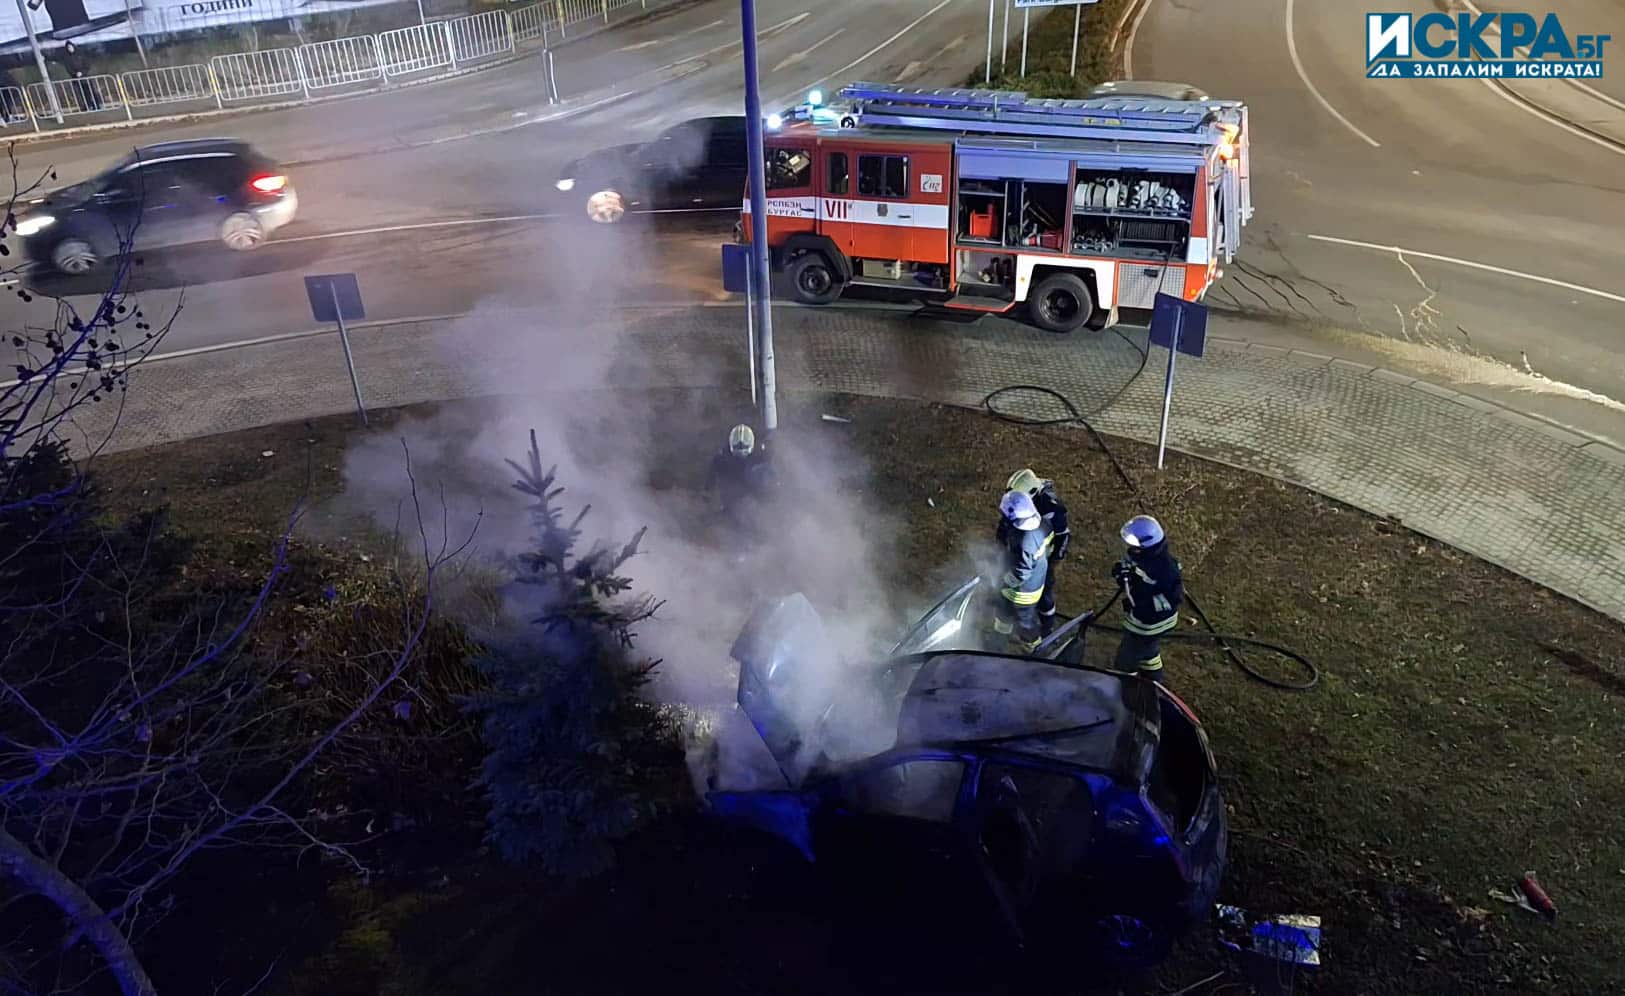 Горящ автомобил Снимка Искра бг
Едип от един противопожарен автомобил и четирима